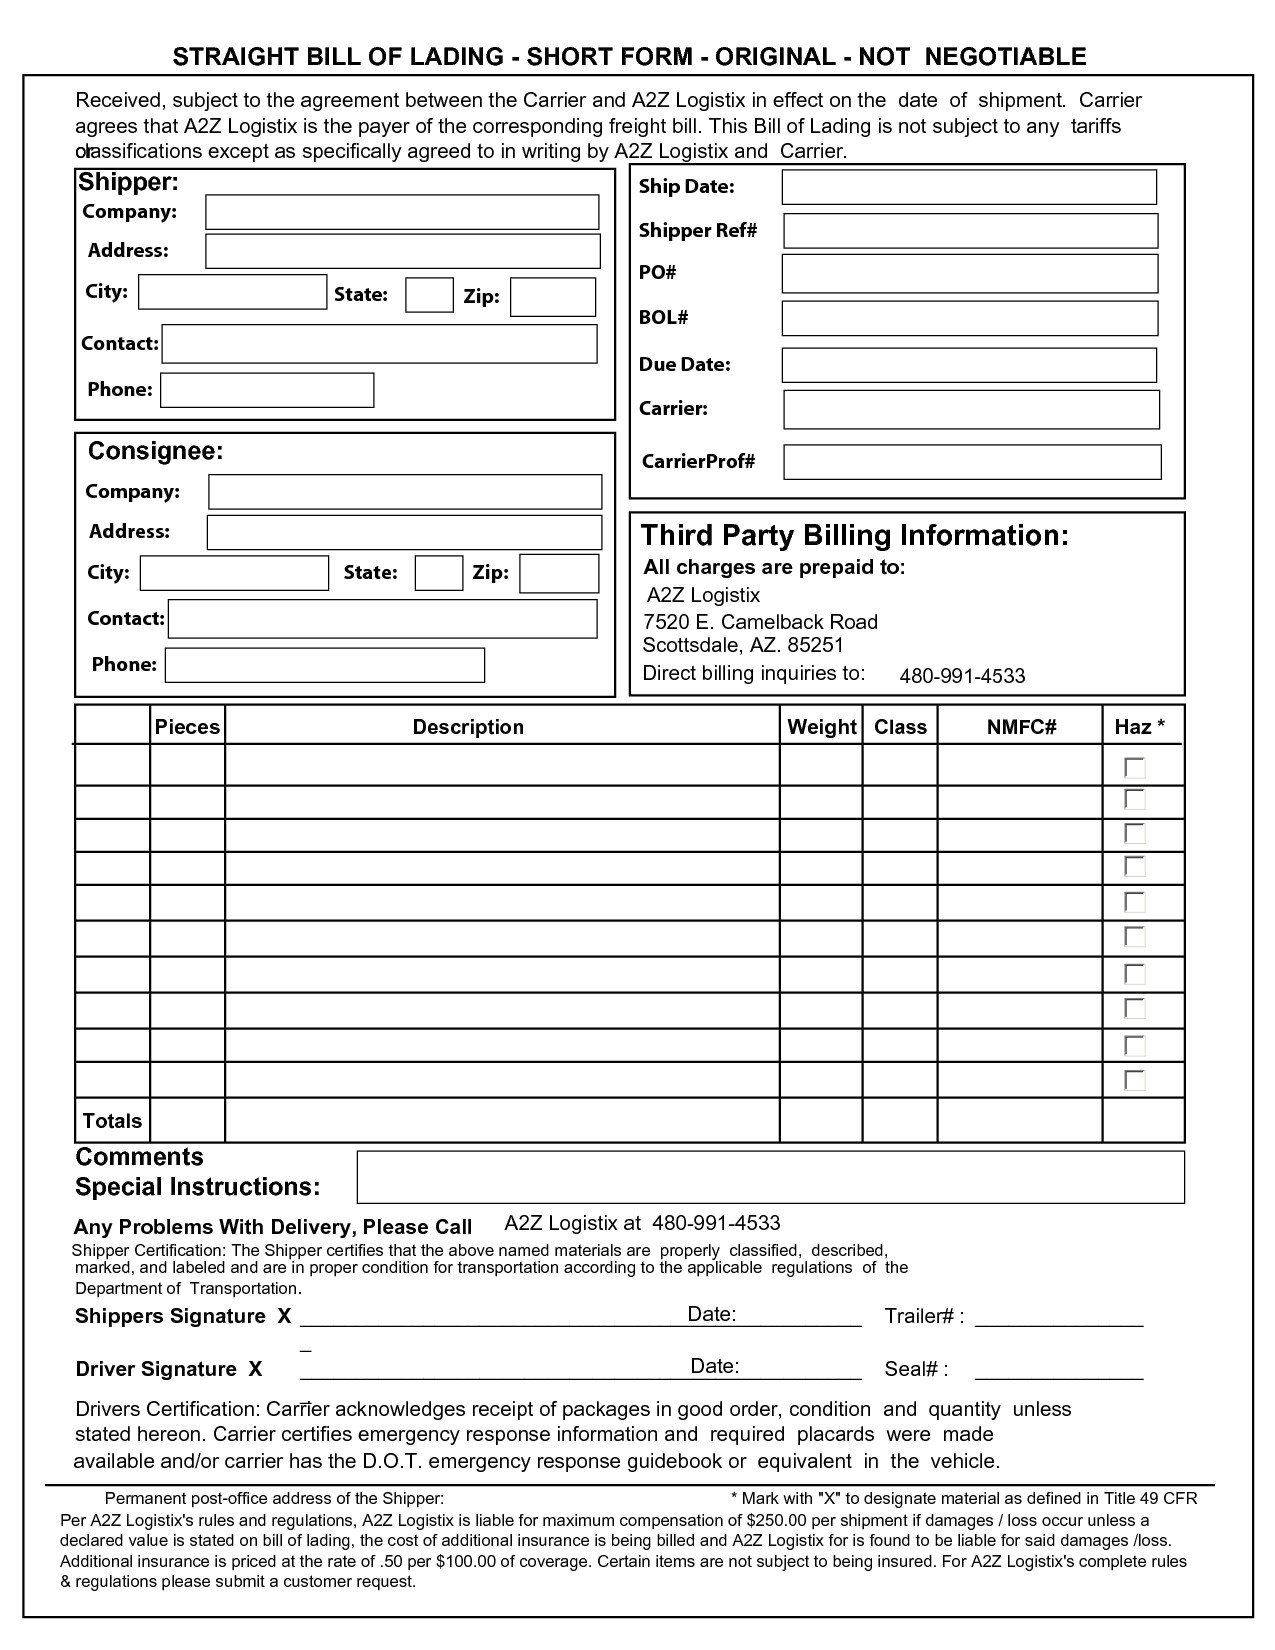 post bill of lading short form 13667